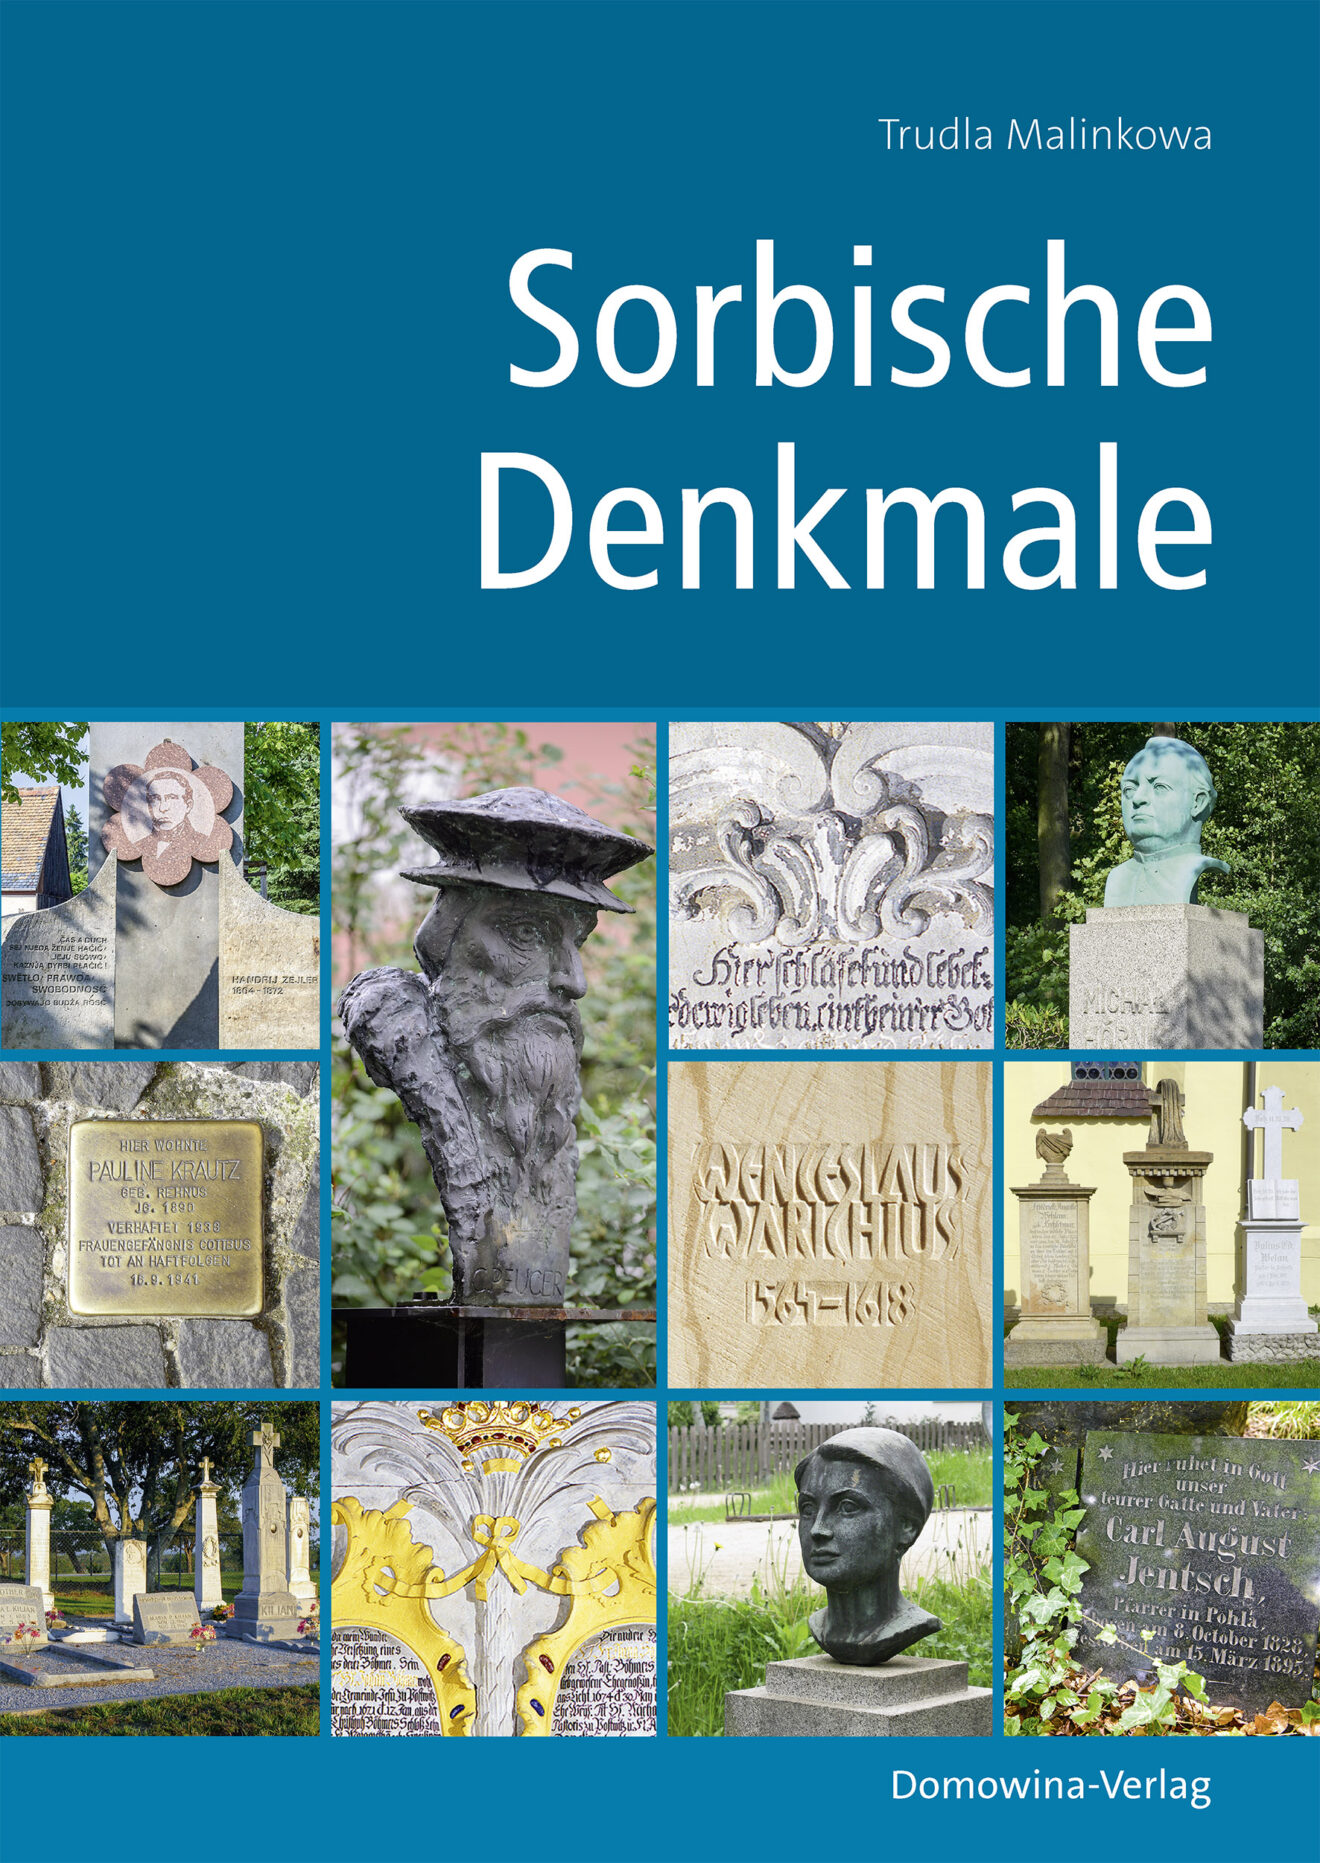 Buchcover "Sorbische Deknmale" von Trudla Malinkowa, erschienen im Domowina-Verlag © LND (2022)